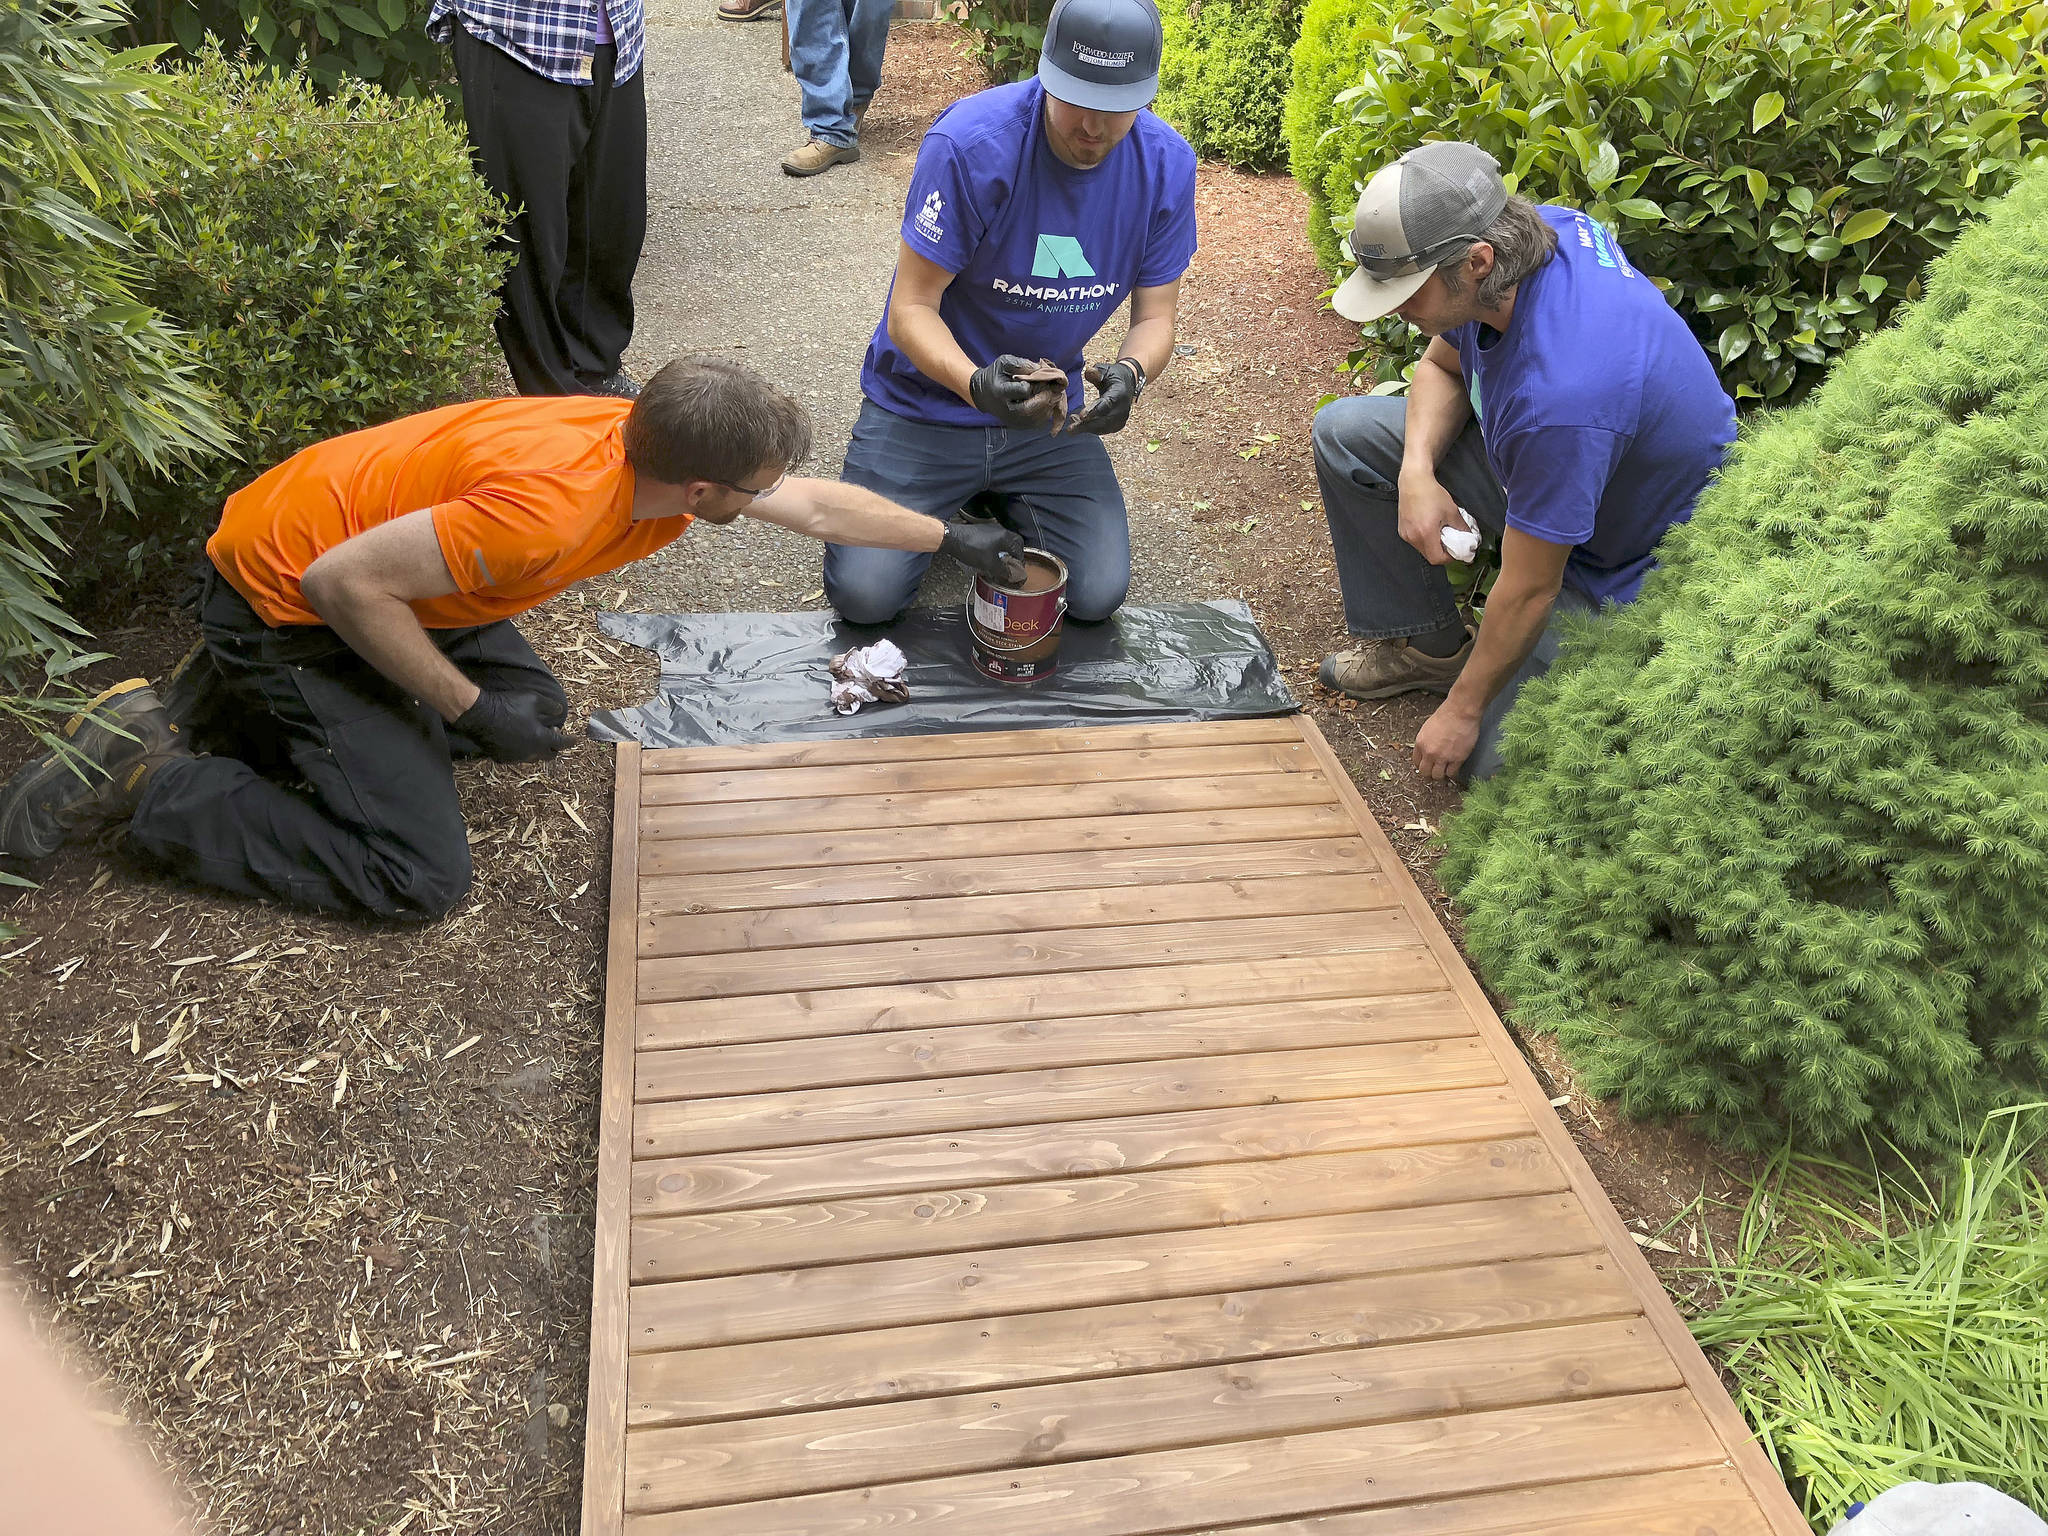 Volunteers build access ramps for locals